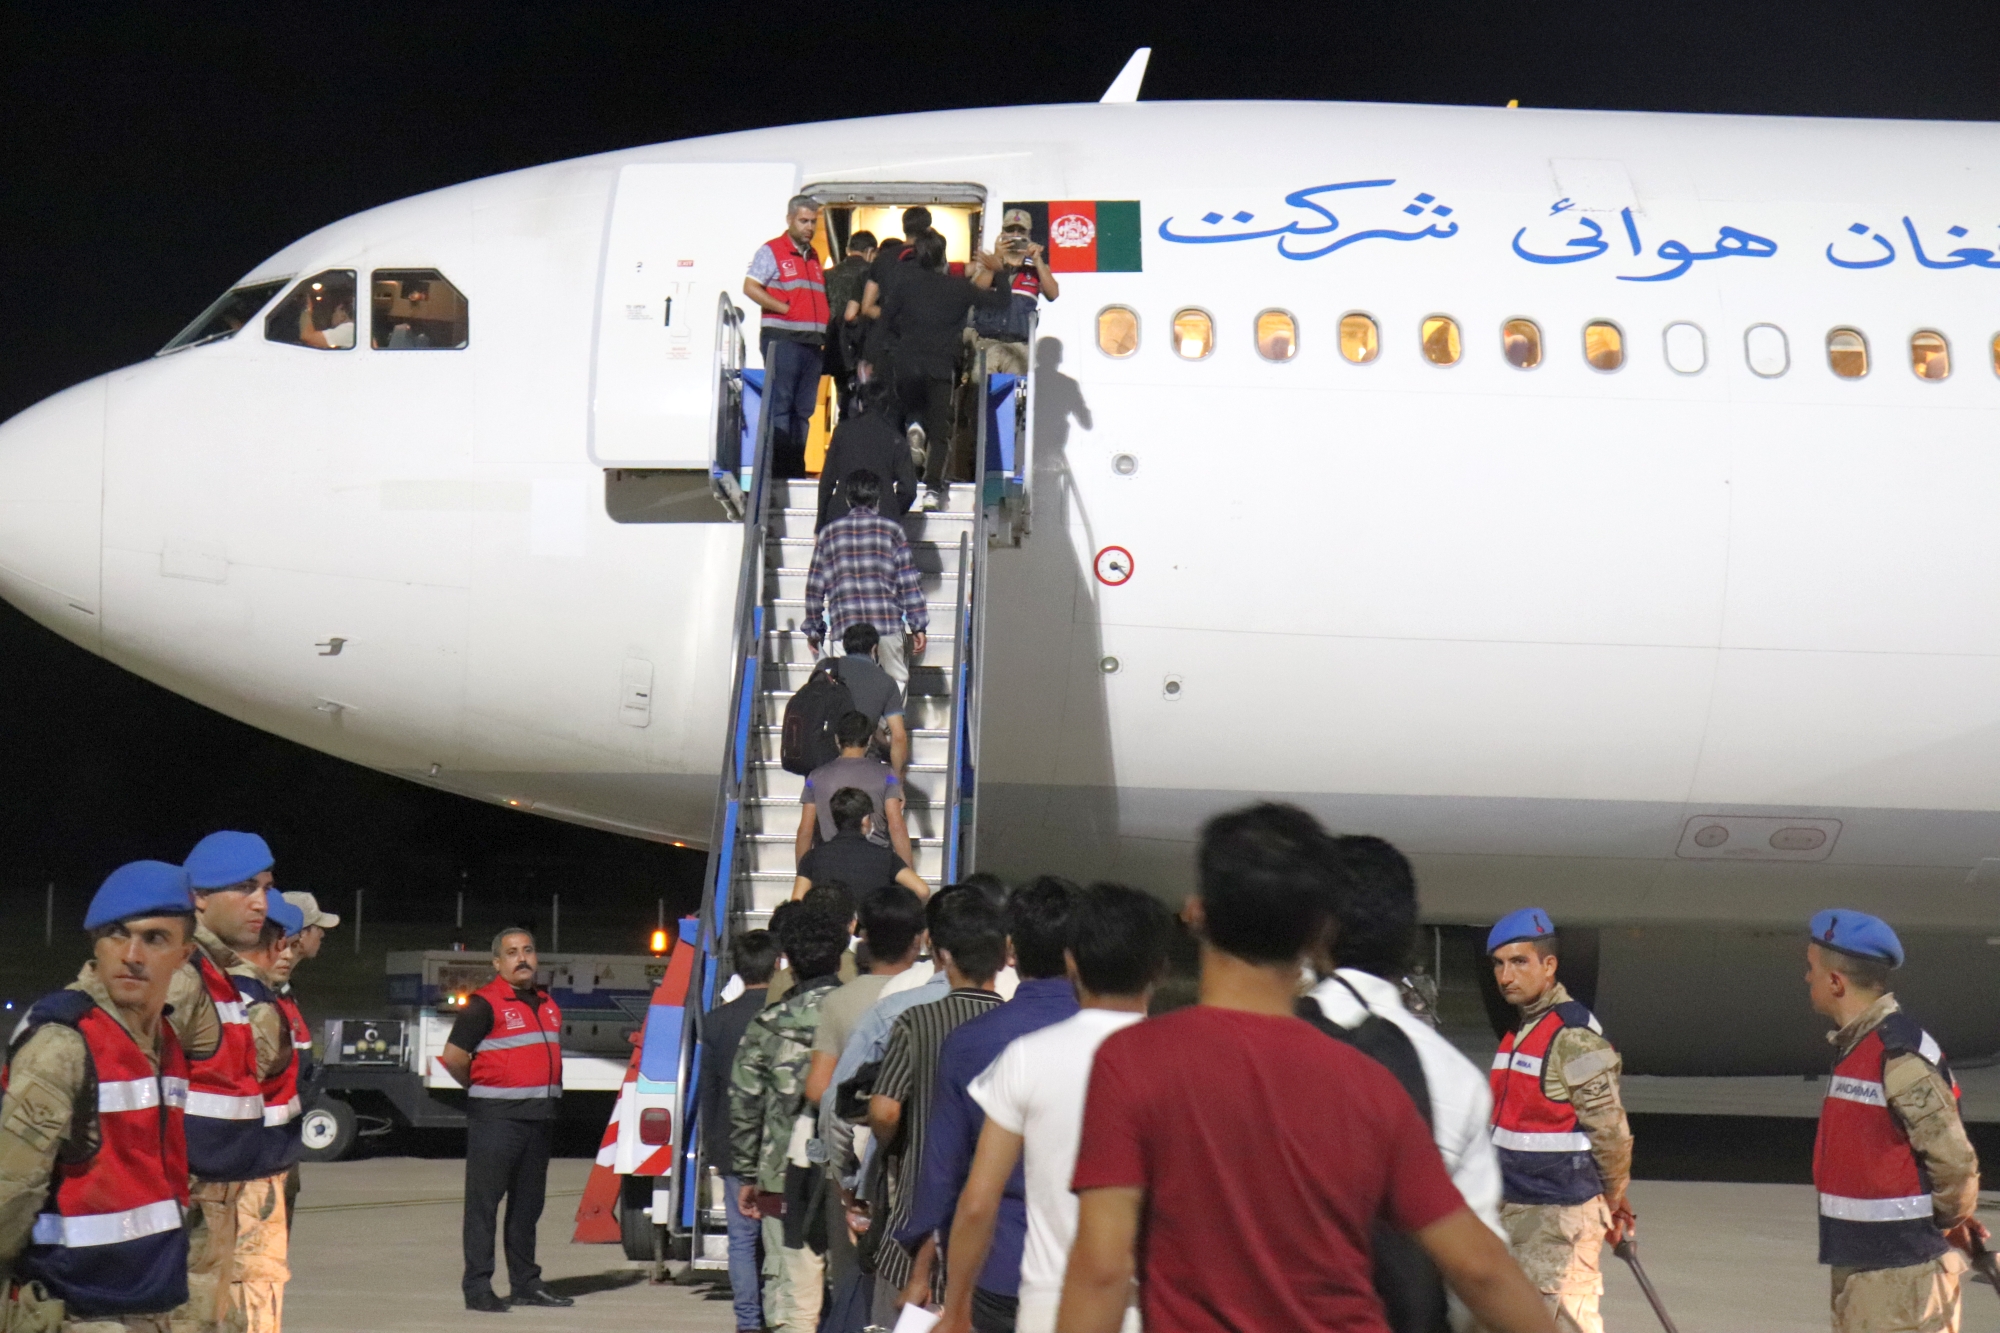 İçişleri Bakanlığı Göç İdaresi Başkanlığı’na bağlı Malatya’daki Geri Gönderme Merkezinde  227 düzensiz göçmen uçakla ülkesine gönderildi. Malatya’da 4 günde toplam 908 Afganistan uyruklu düzensiz göçmen uçak seferleriyle ülkesine gönderilecek.